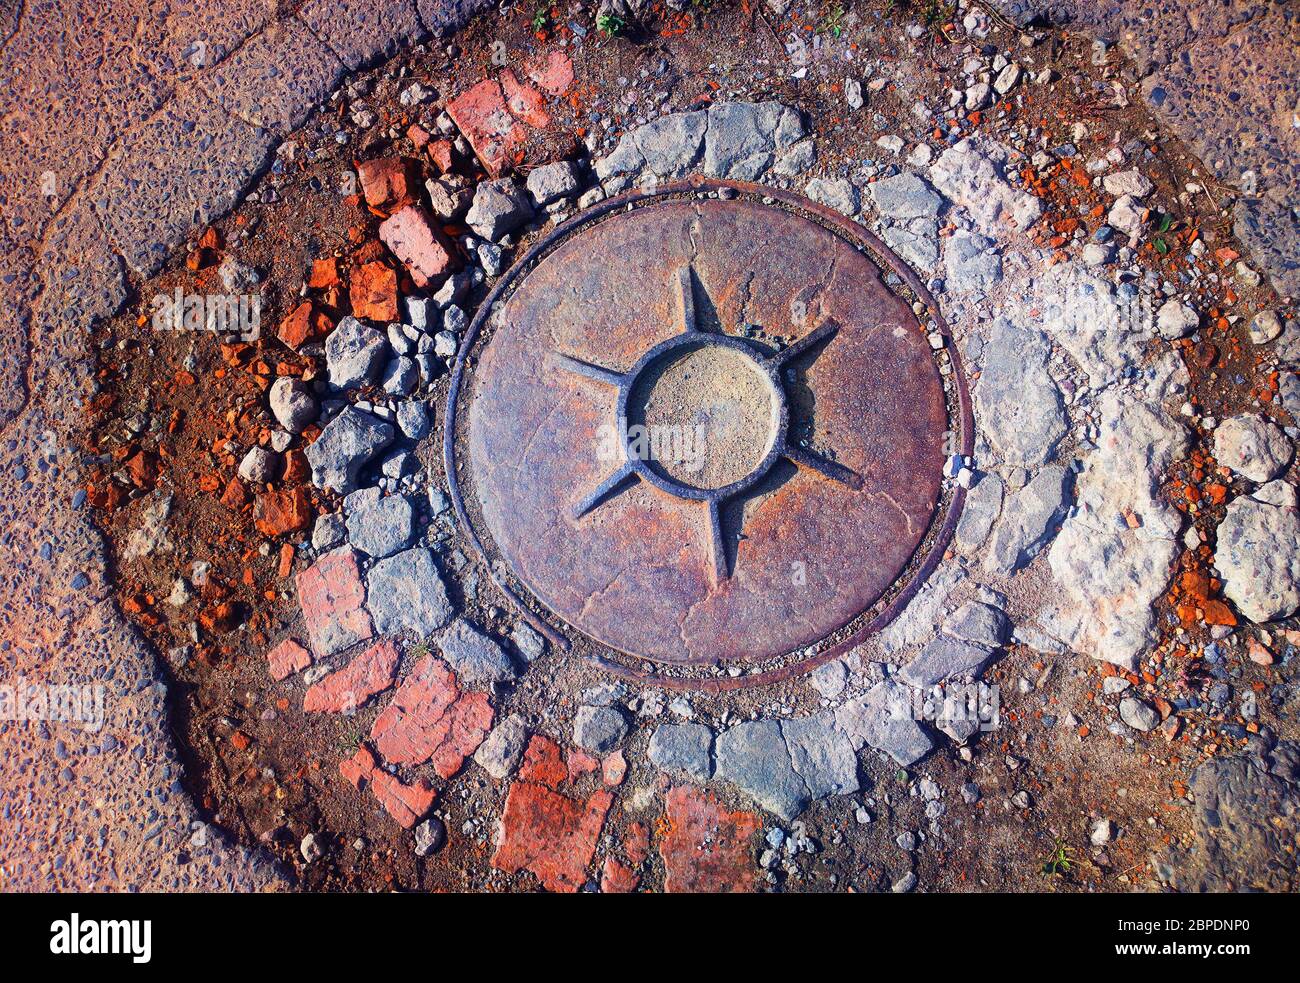 Vintage sewerage manhole object background Stock Photo